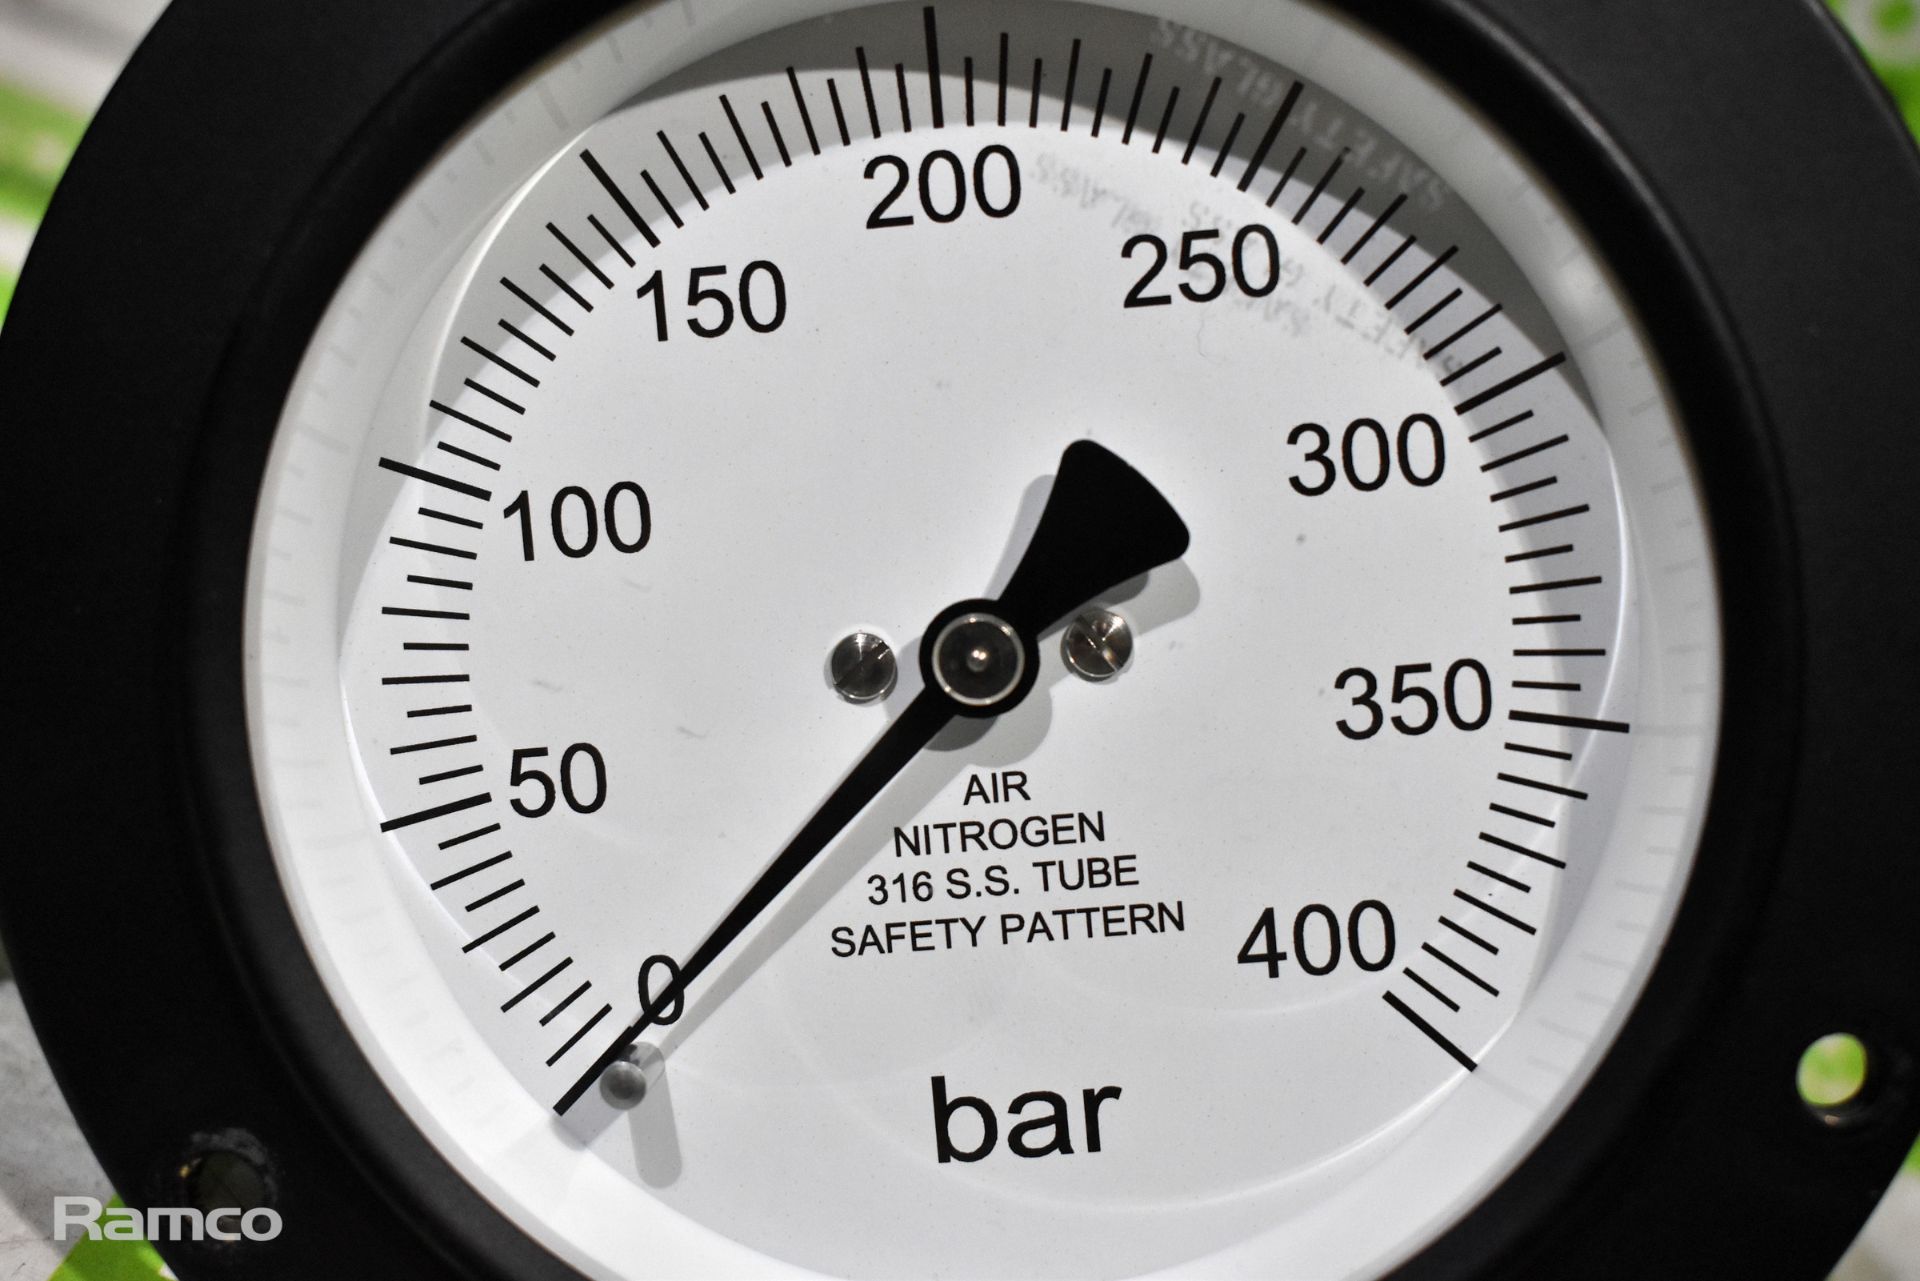 2x 400 bar pressure gauges - Image 3 of 4